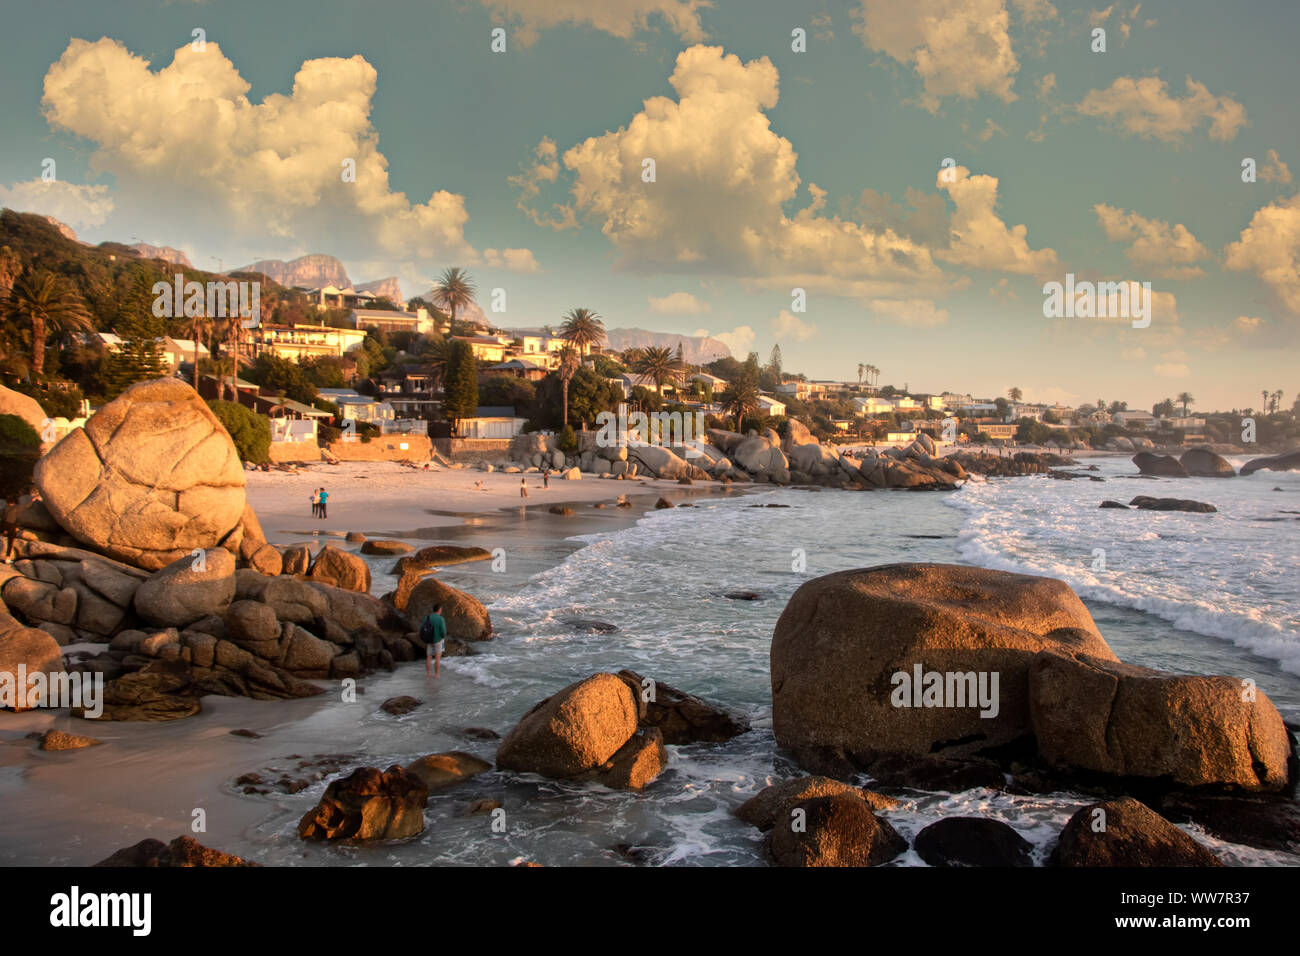 Vue sur la plage de la capitale législative d'Afrique du Sud, la ville pittoresque de Cape Town Banque D'Images